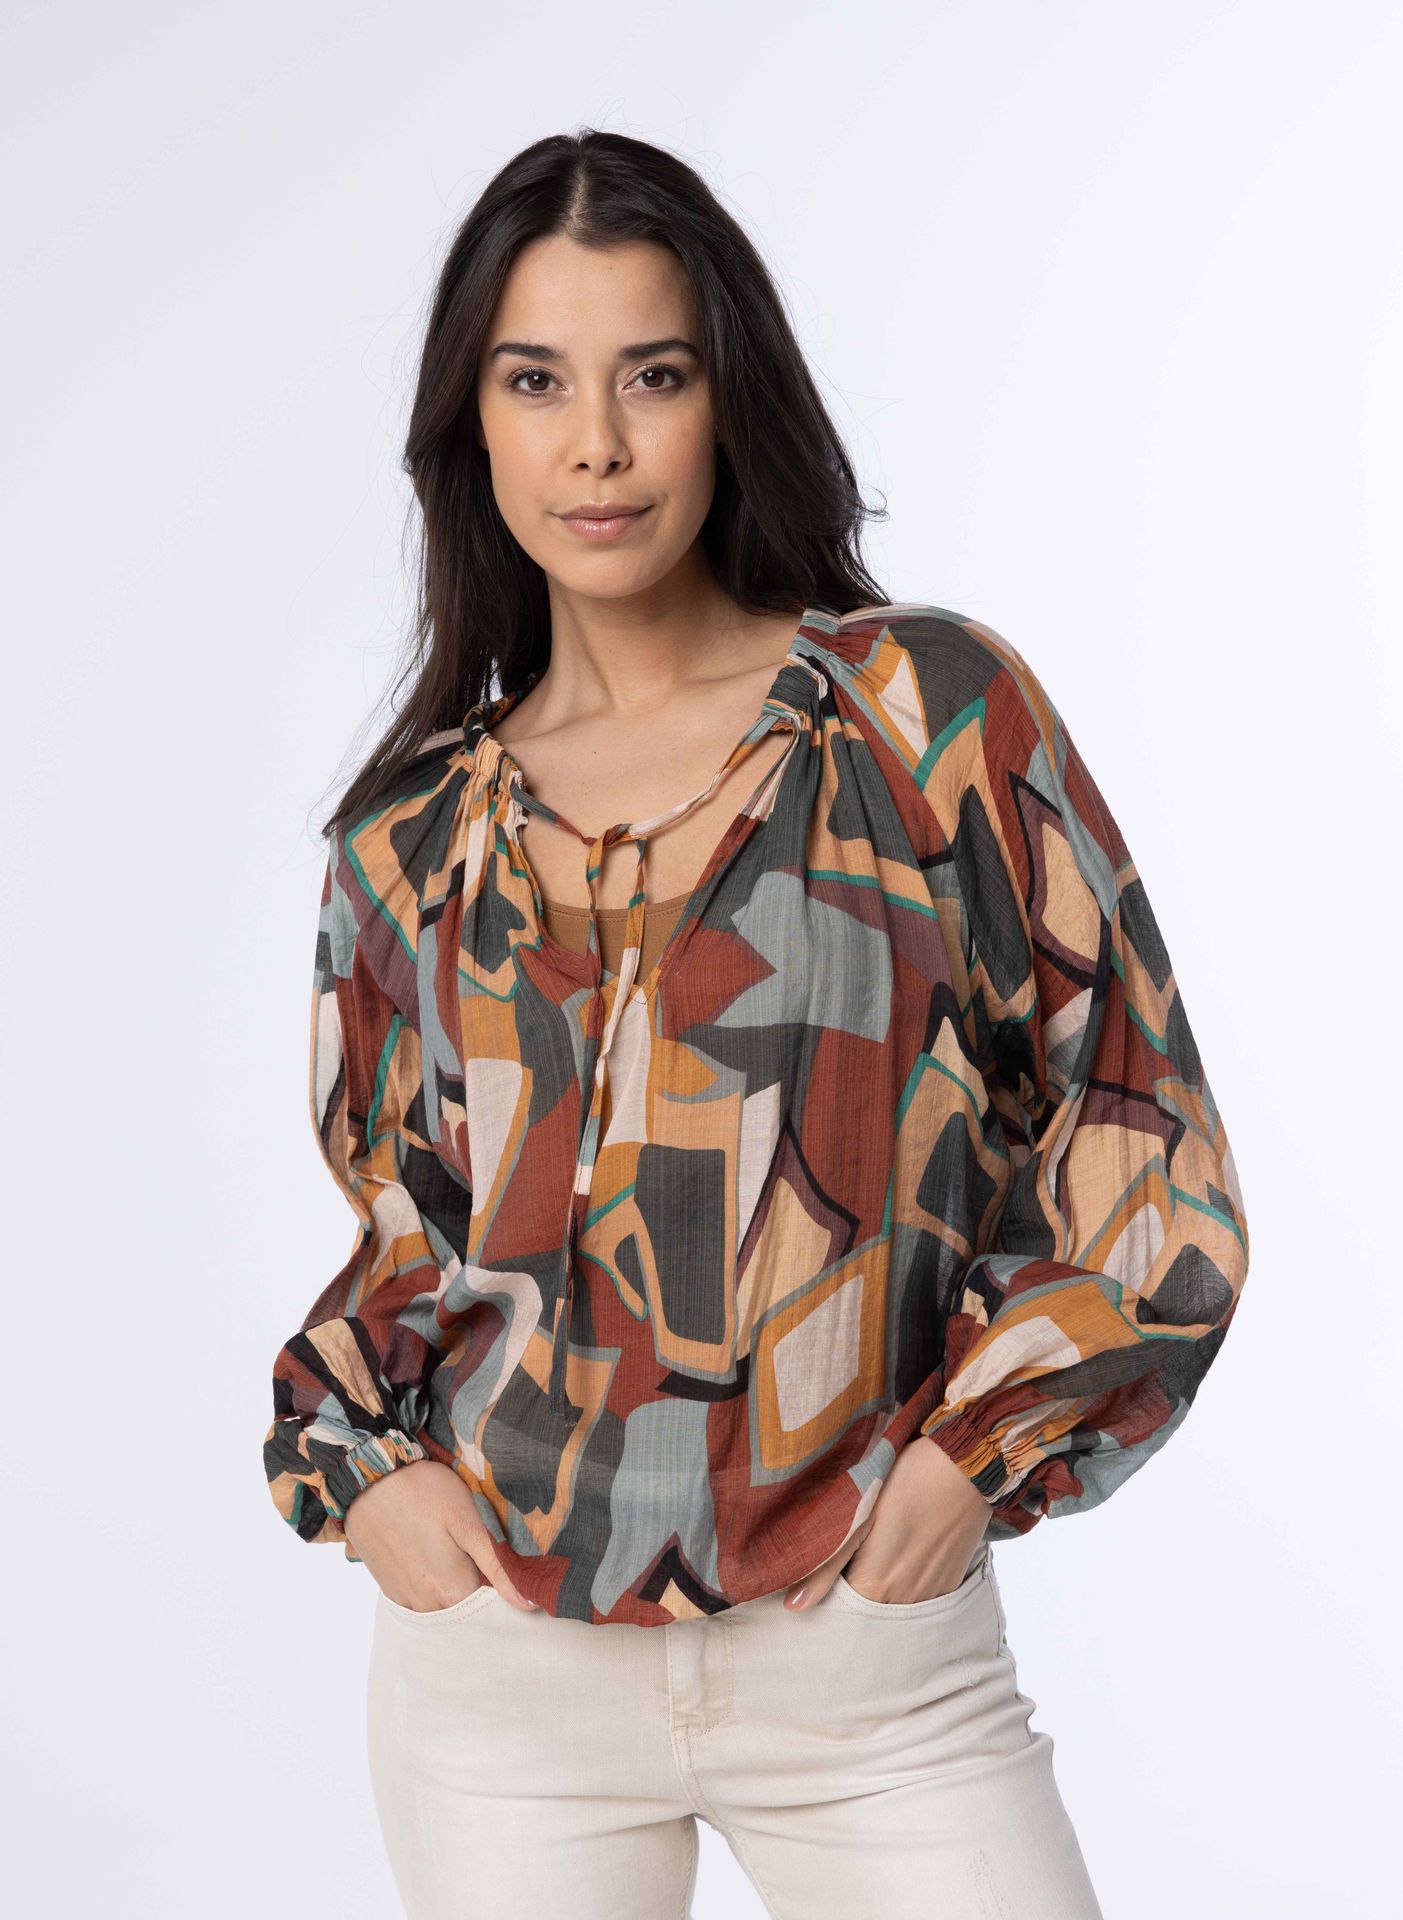 Norah Meerkleurige blouse met pofmouwen brown multicolor 213512-220